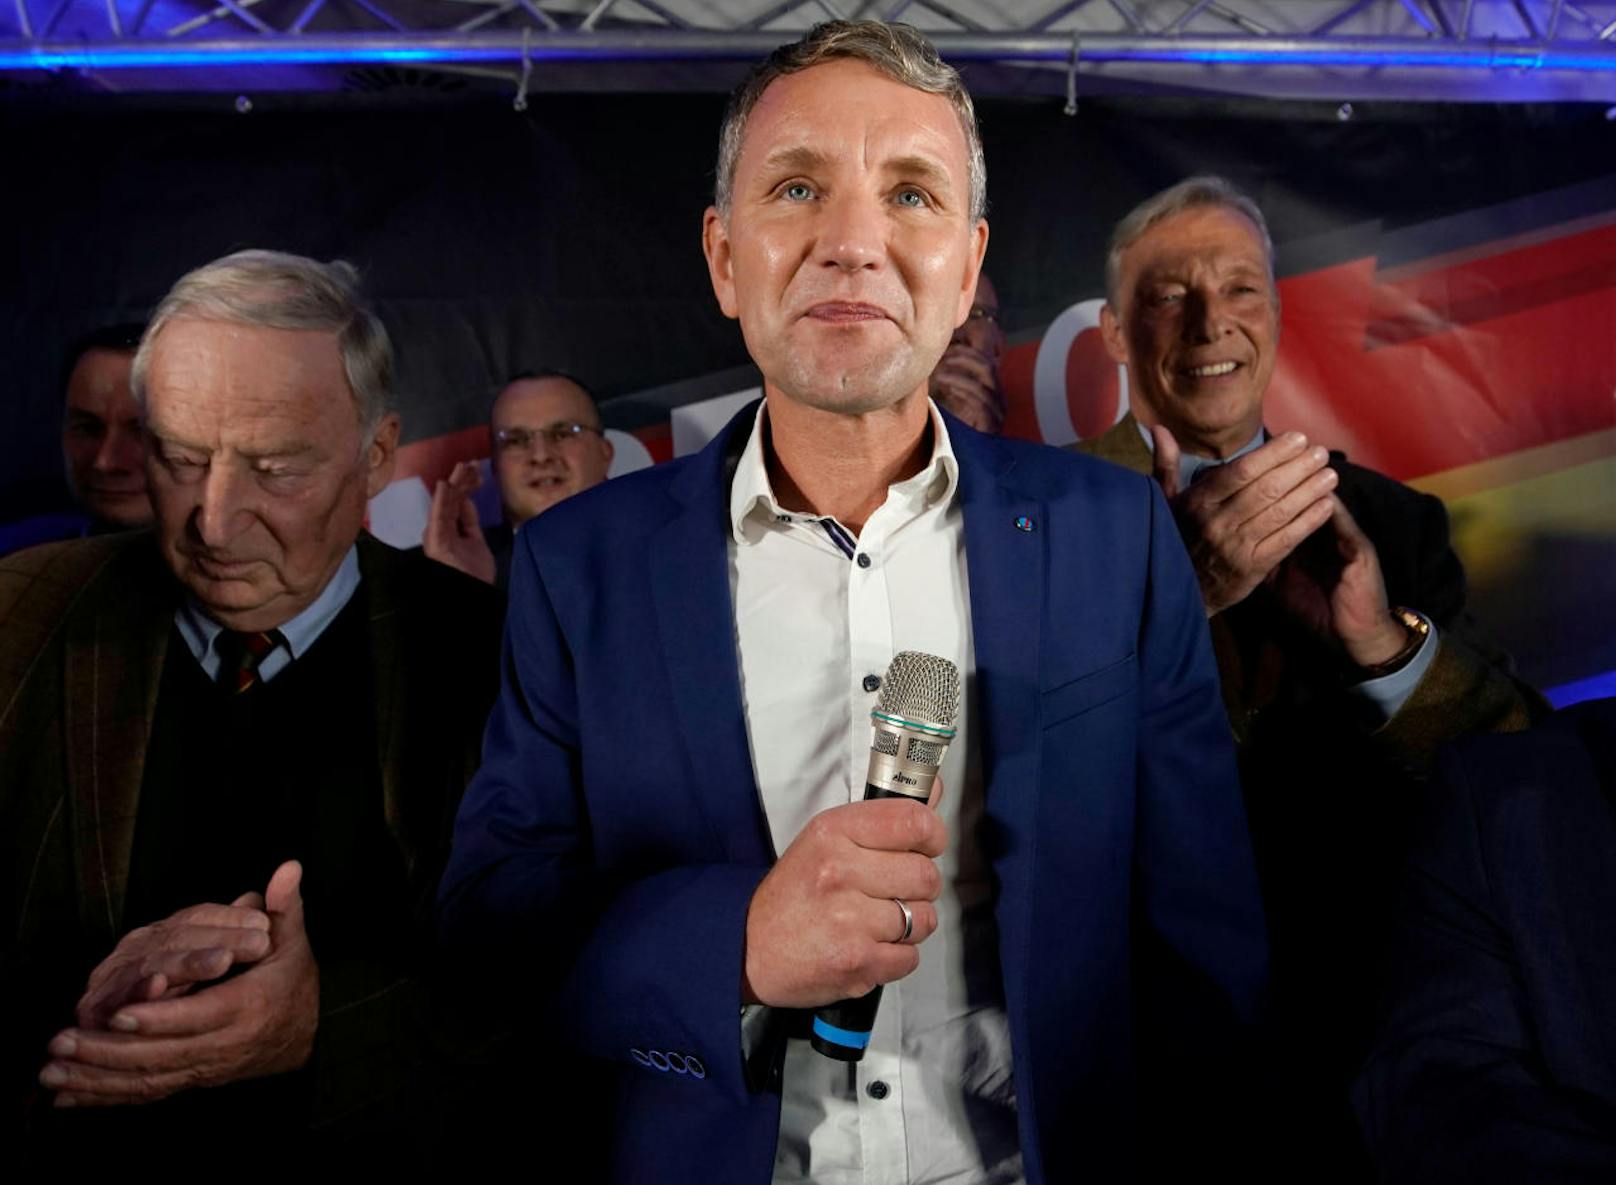 Die AfD (Alternative für Deutschland) mit ihrem weit rechts stehenden Spitzenkandidaten <b>Björn Höcke</b> kann ihren Stimmanteil auf 24 (ZDF: 23) Prozent mehr als verdoppeln.